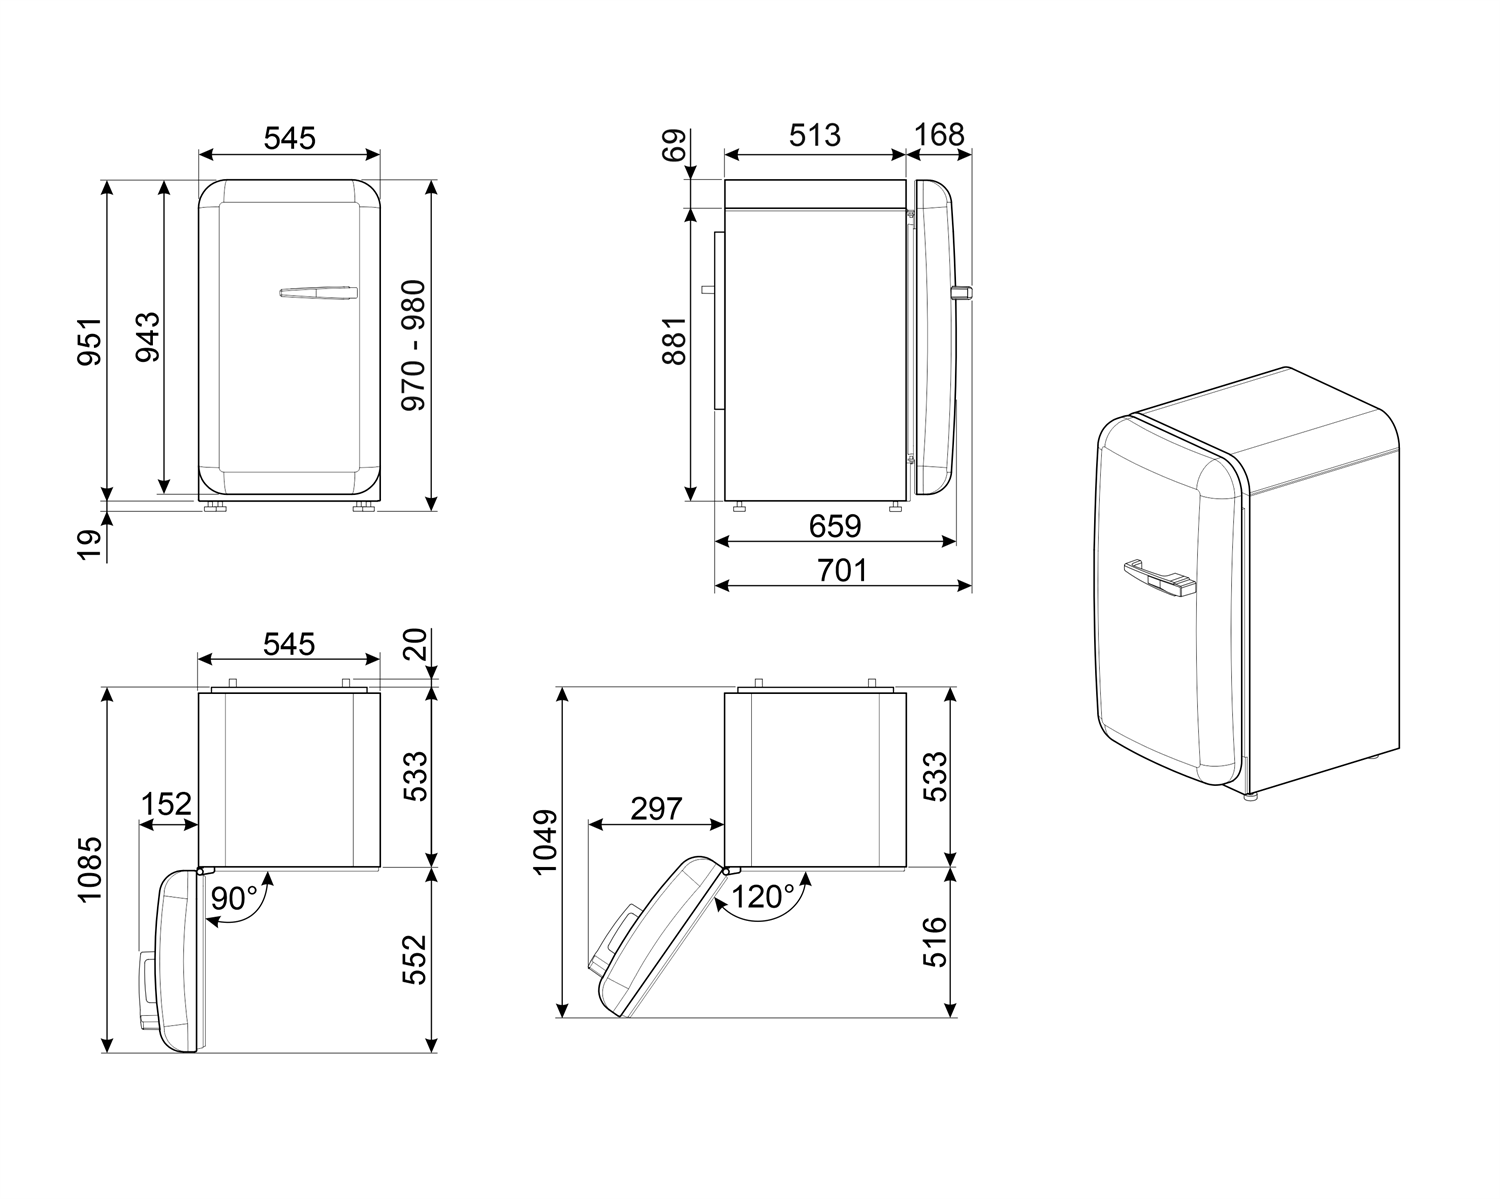 Maattekening SMEG koelkast tafelmodel wit FAB10HLWH5